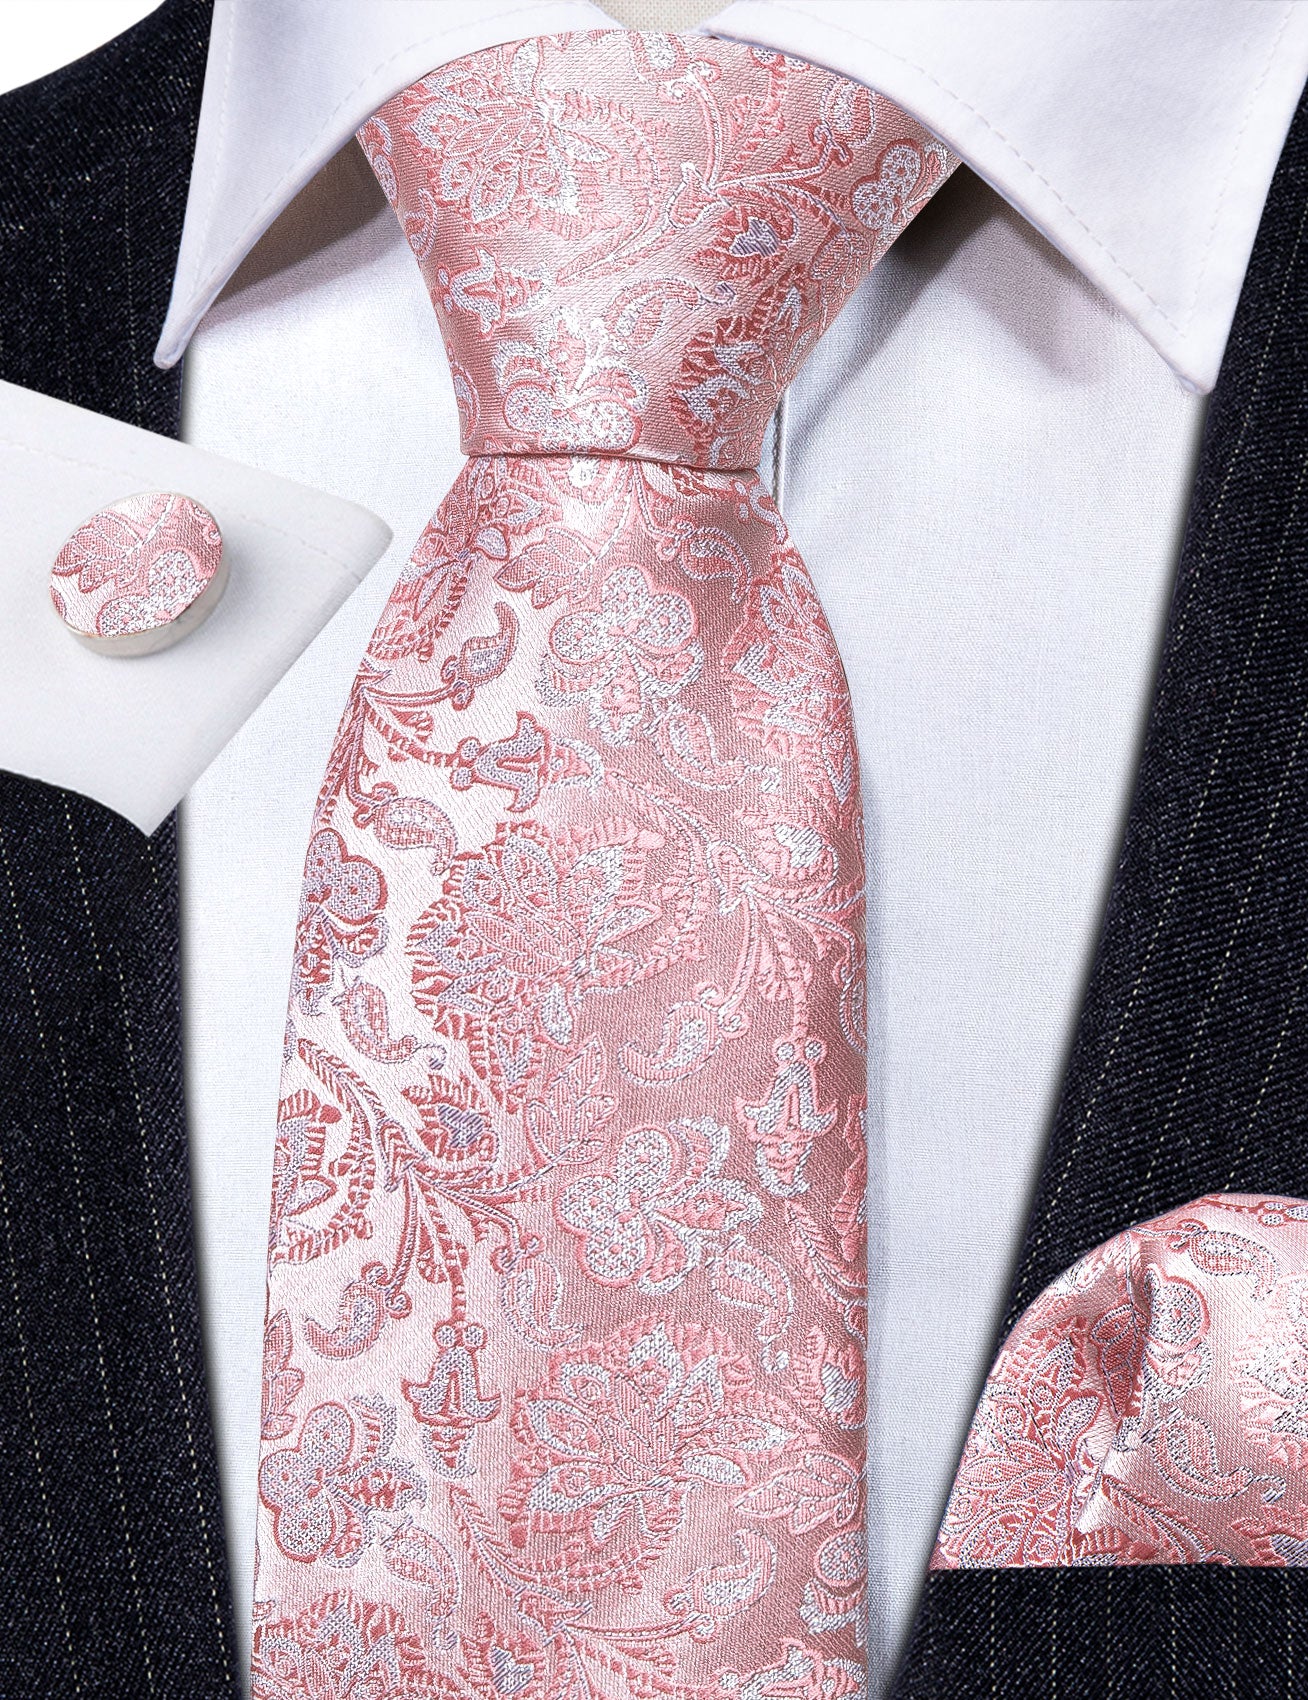 Bright Pink White Paisley Silk Tie Handkerchief Cufflinks Set